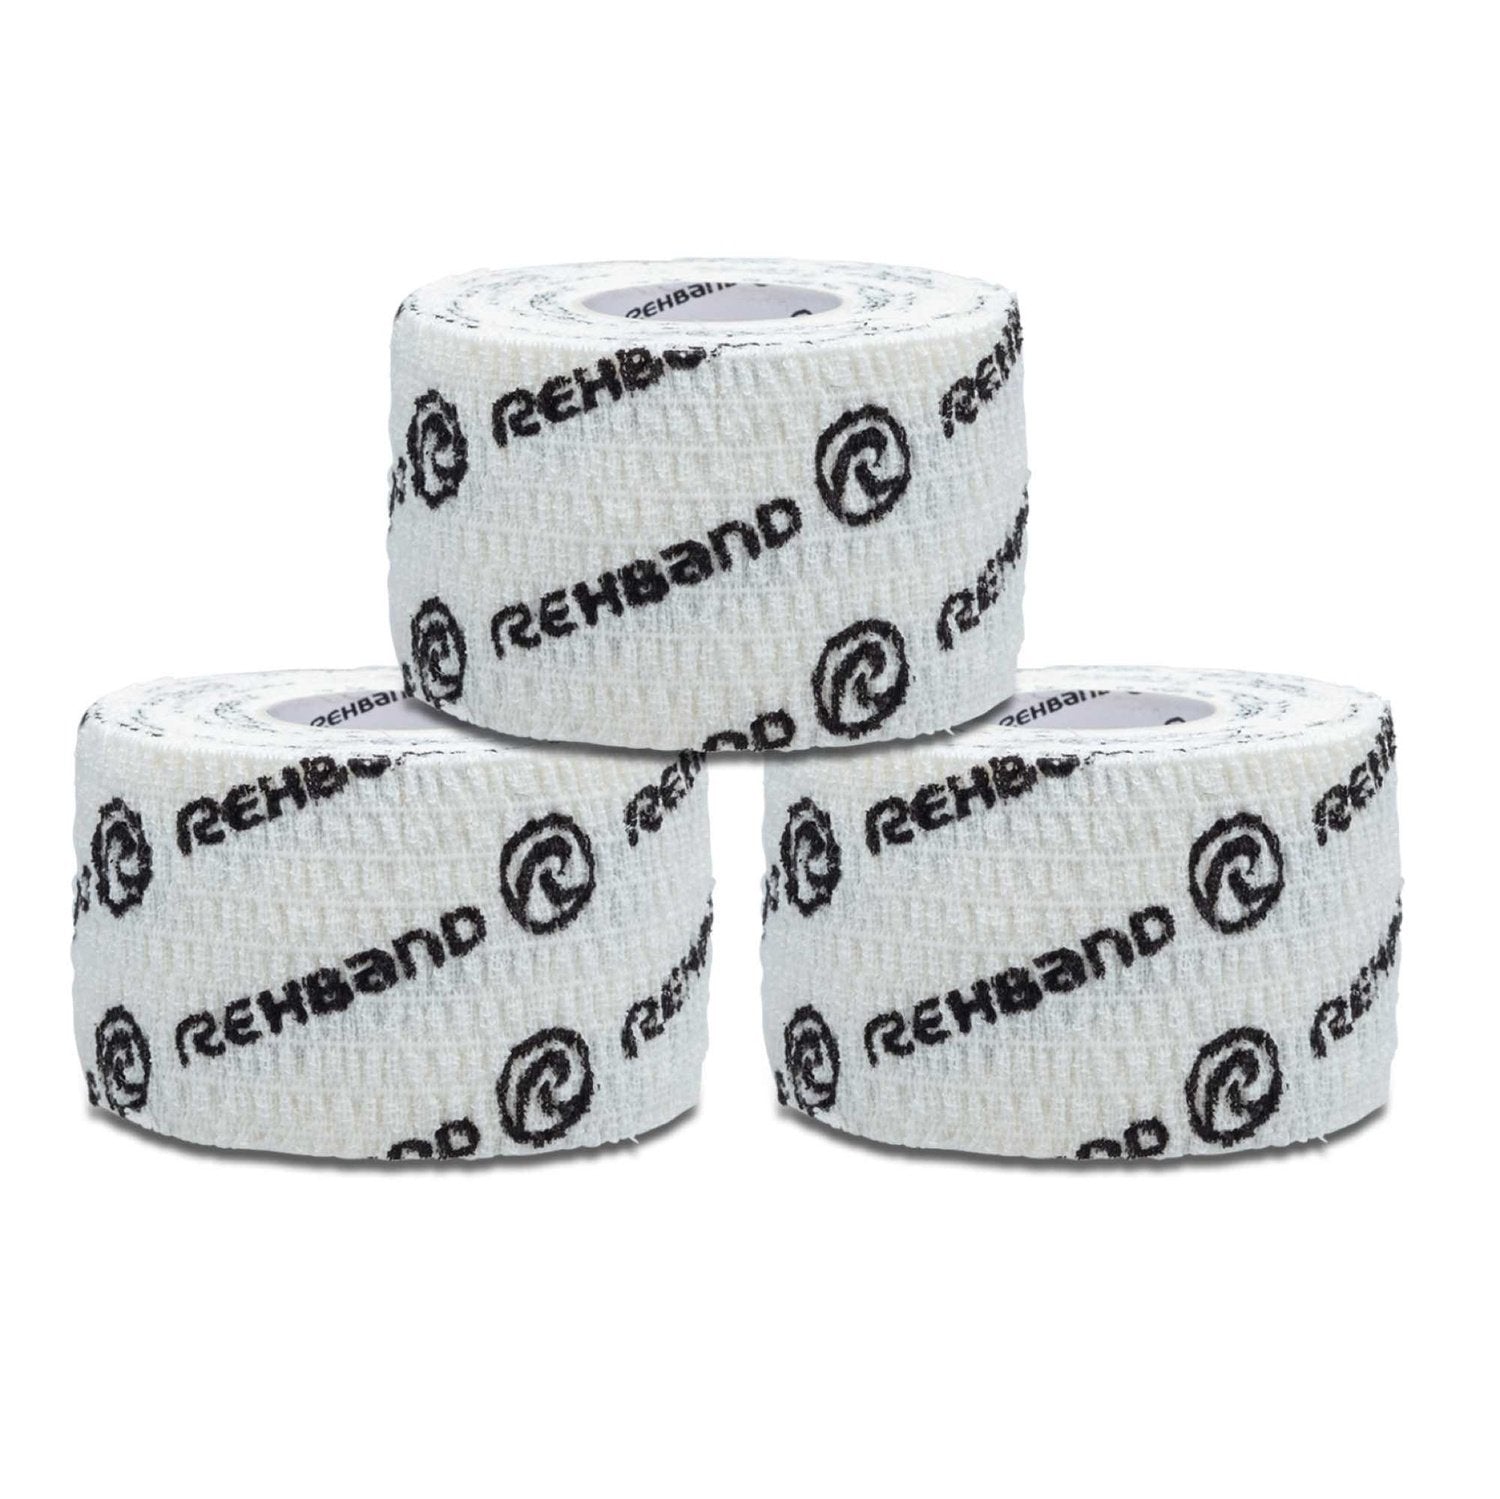 Rehband RX Athletic Power-Wrap 38 mm x 3 Rollen (Gewichtheberband) Weiss kaufen bei HighPowered.ch